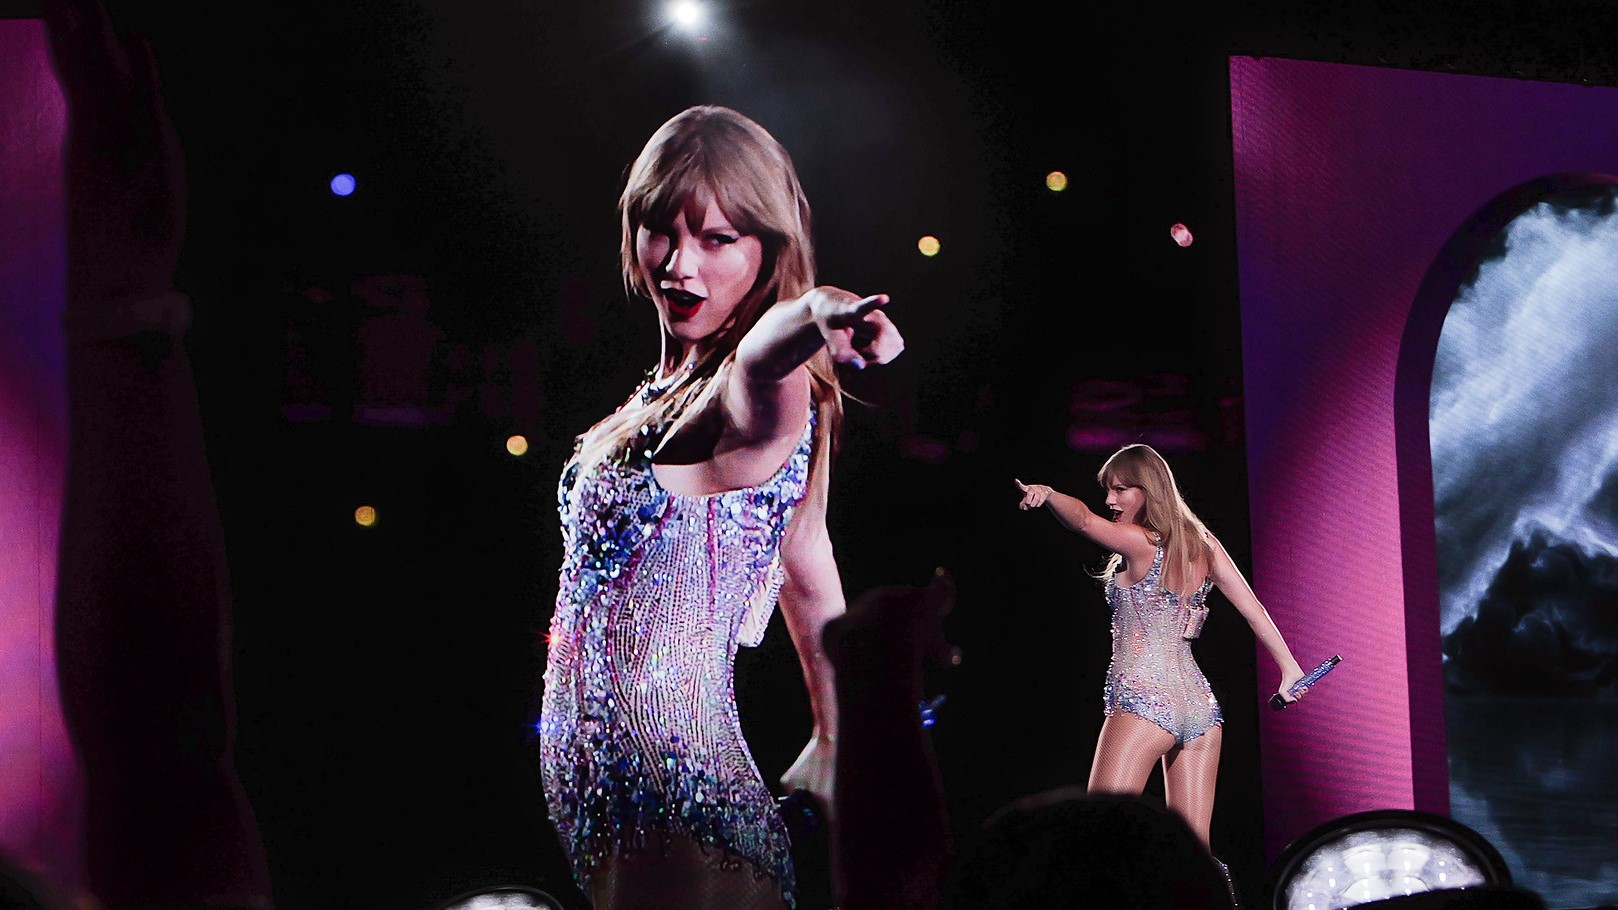 De naaktfakes van Taylor Swift verschenen op X, wat de fans van de zangeres woedend heeft gemaakt